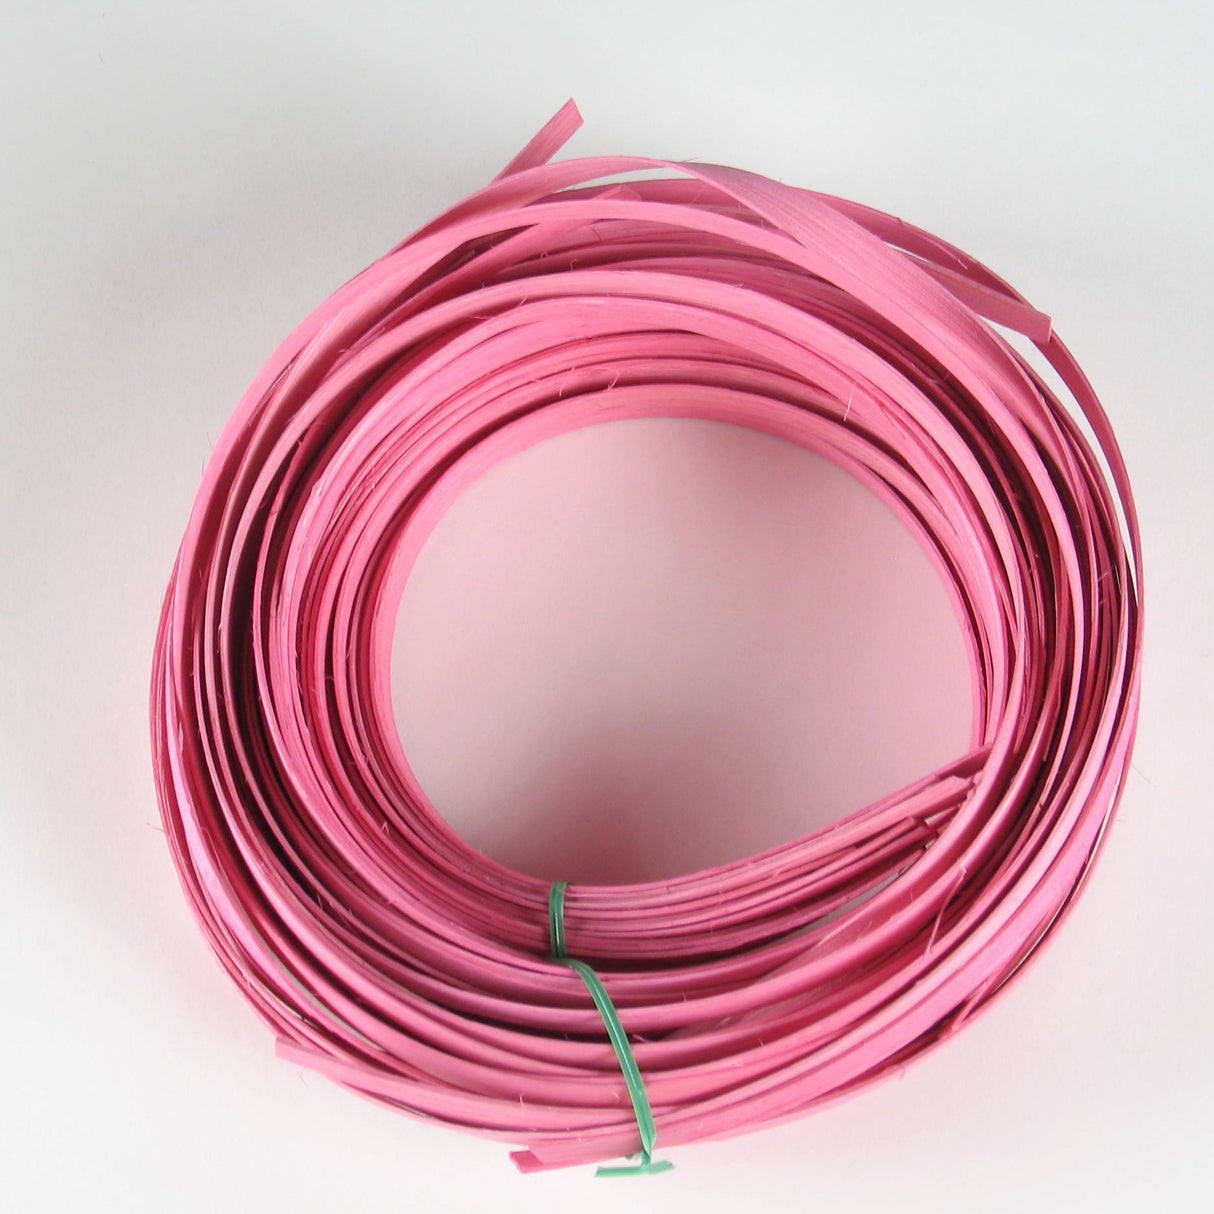 Rose Pink - 1/2" Flat (0.5 lb. bundle)